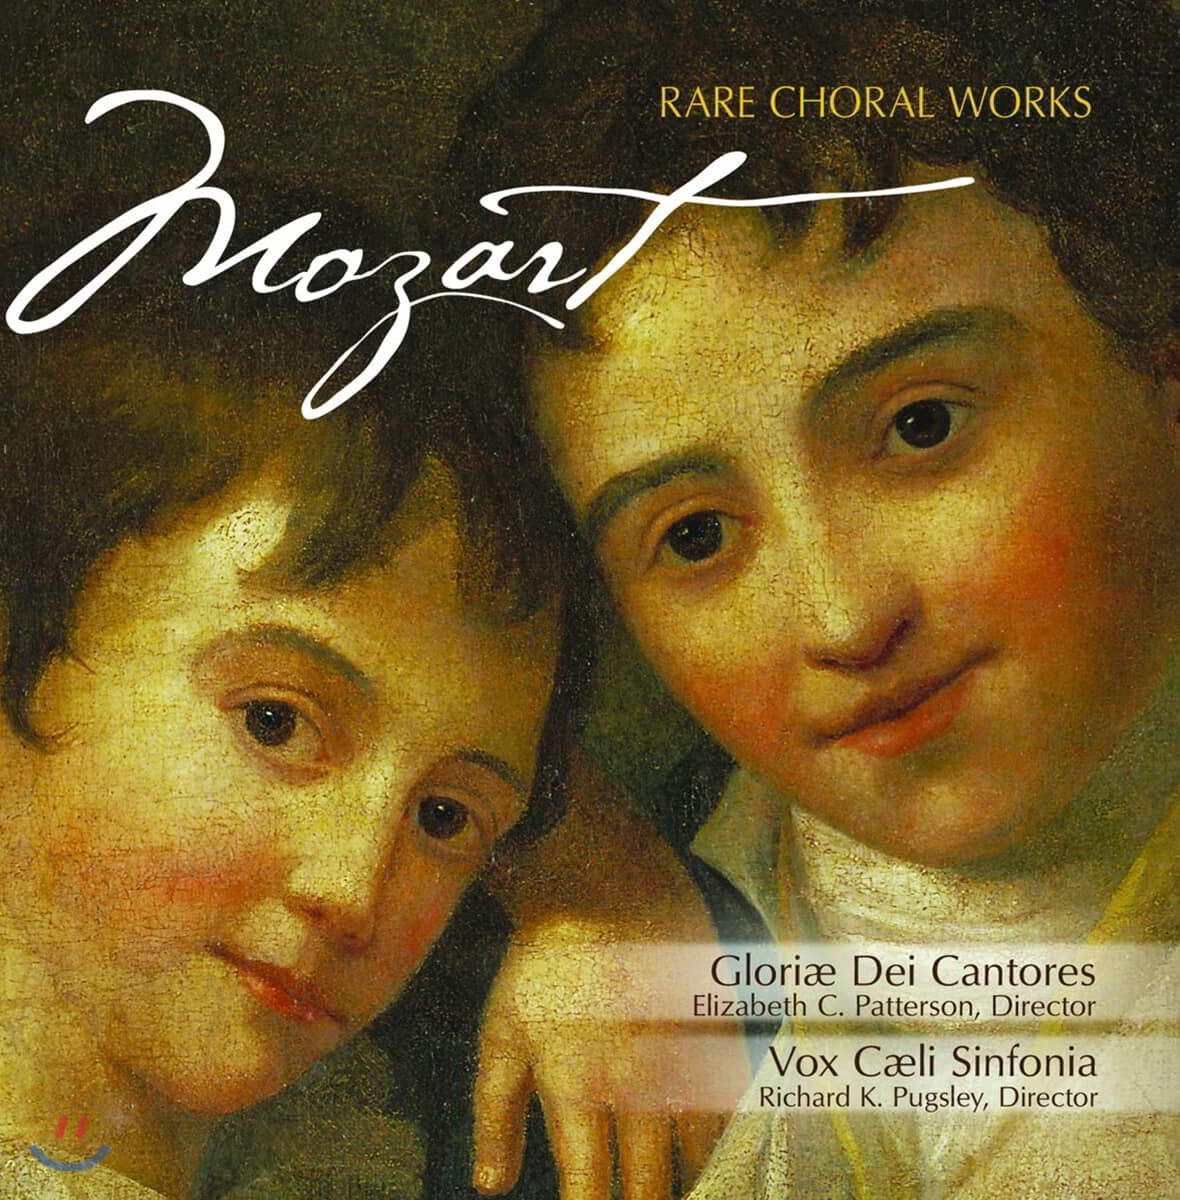 Gloriae Dei Cantores 모차르트: 희귀한 합창 작품집 (Mozart: Rare Choral Works)